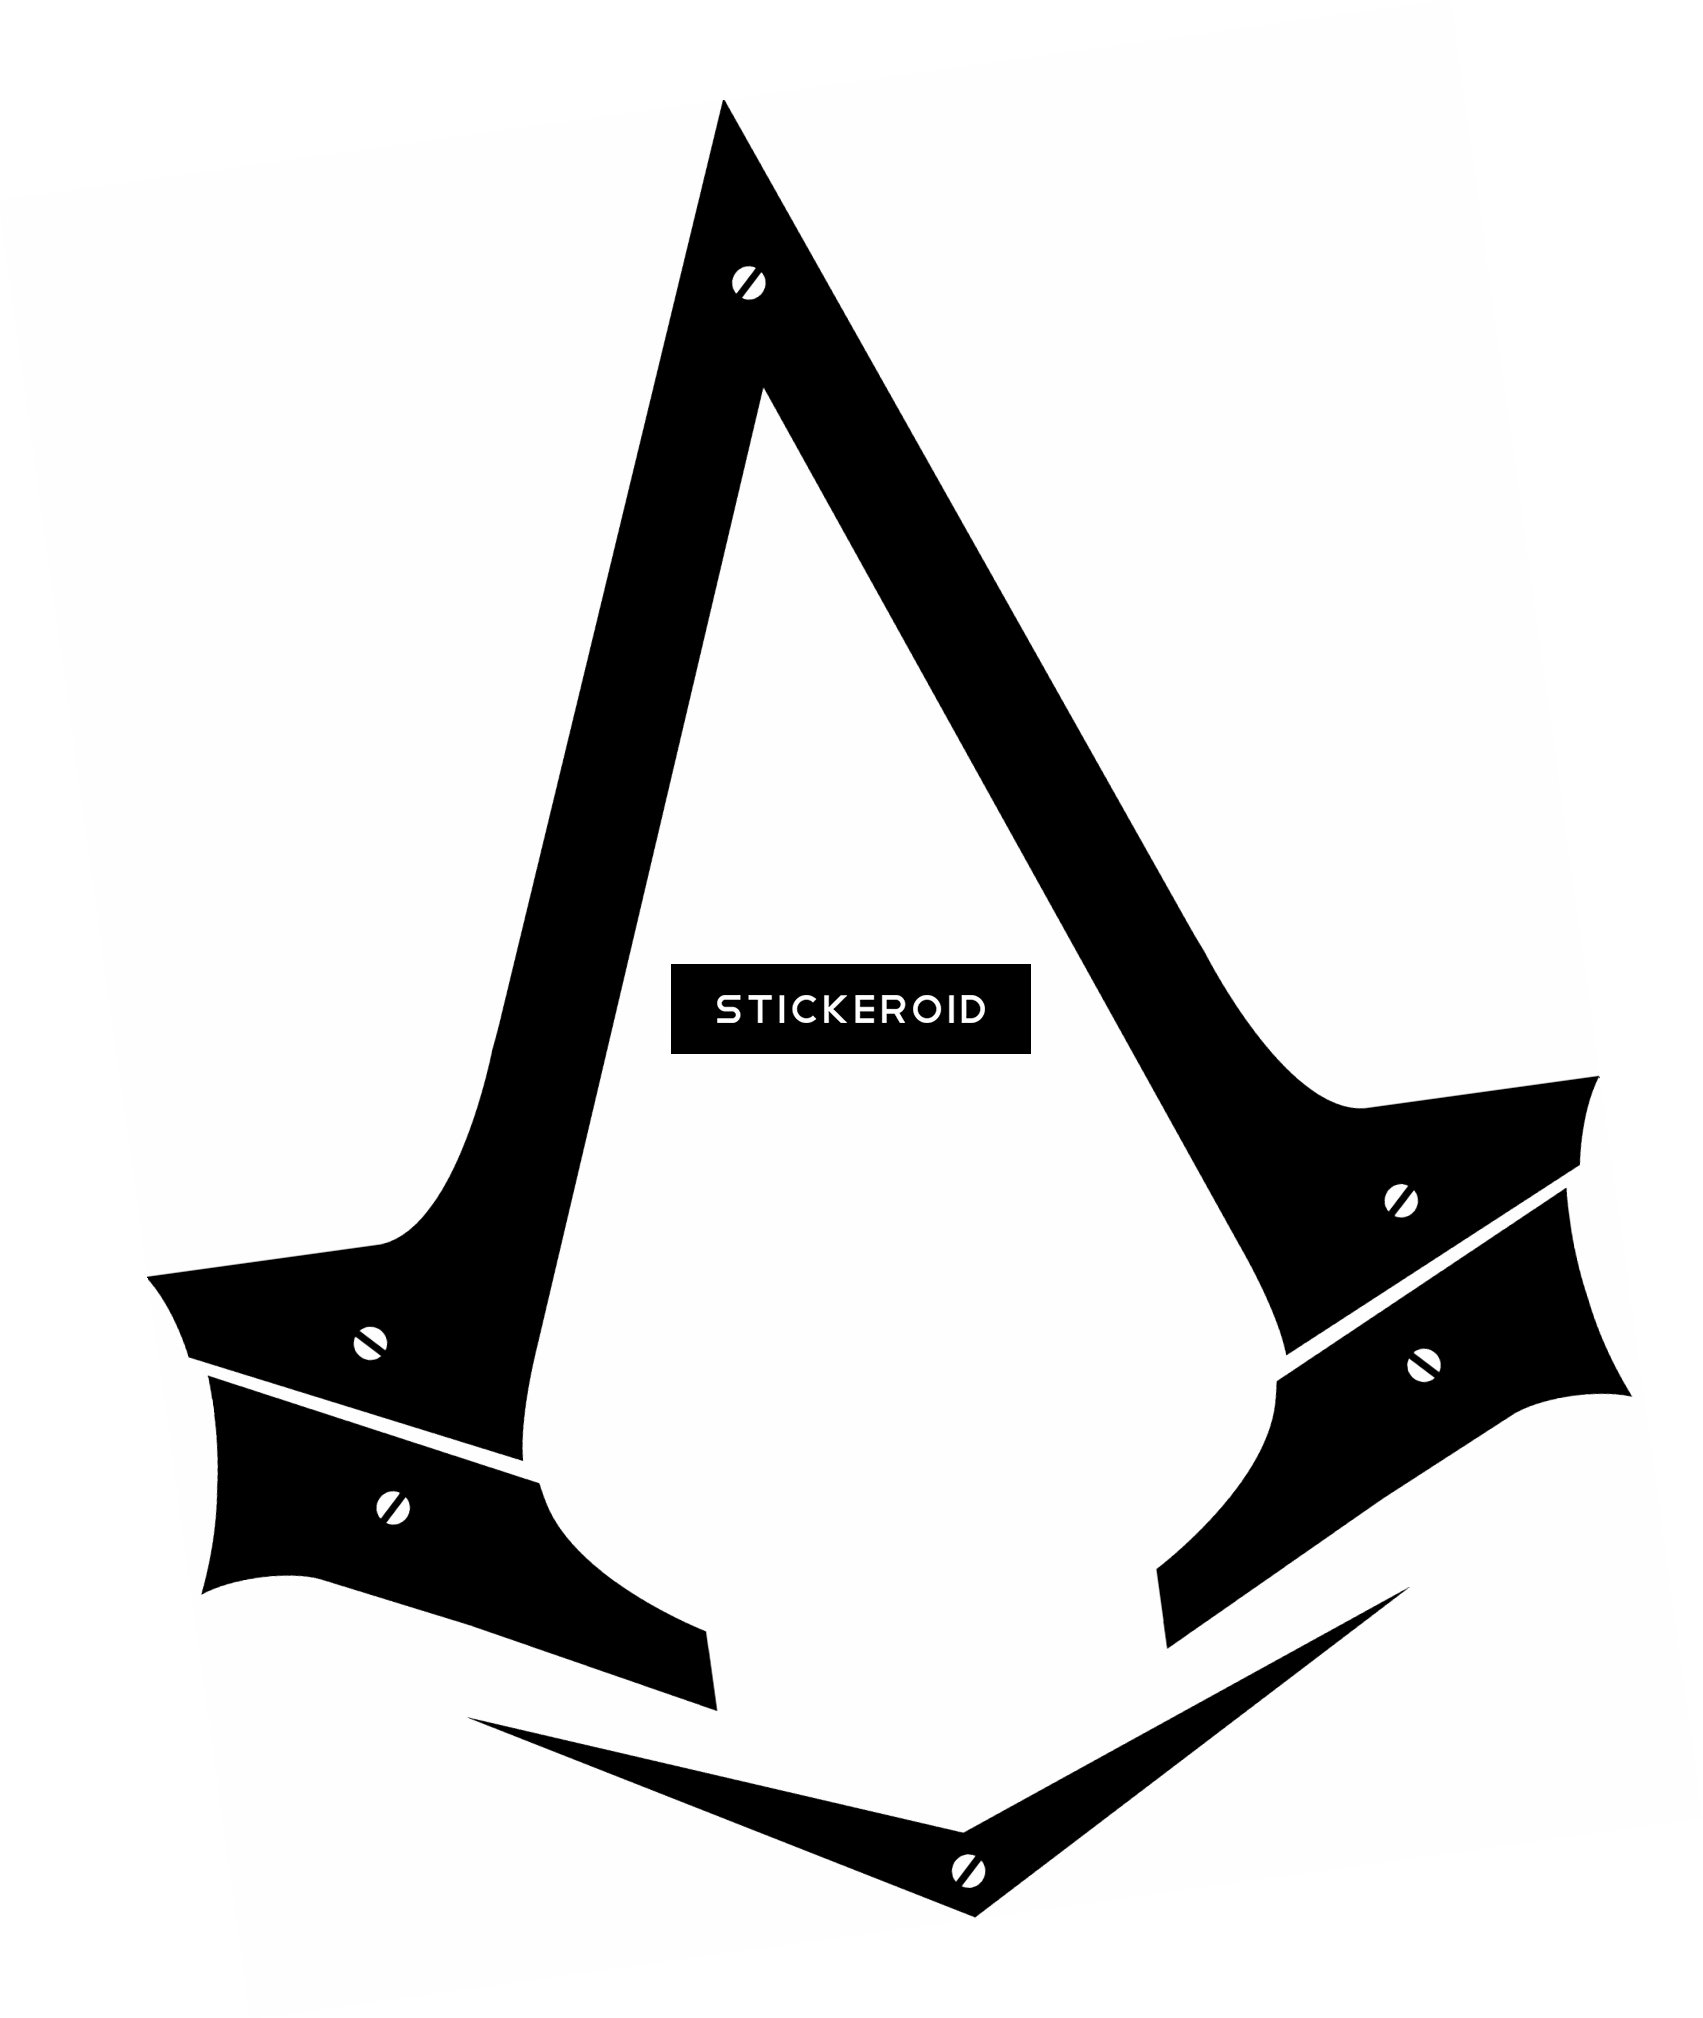 Assassins Creed Unity jeu vidéo Image Transparente